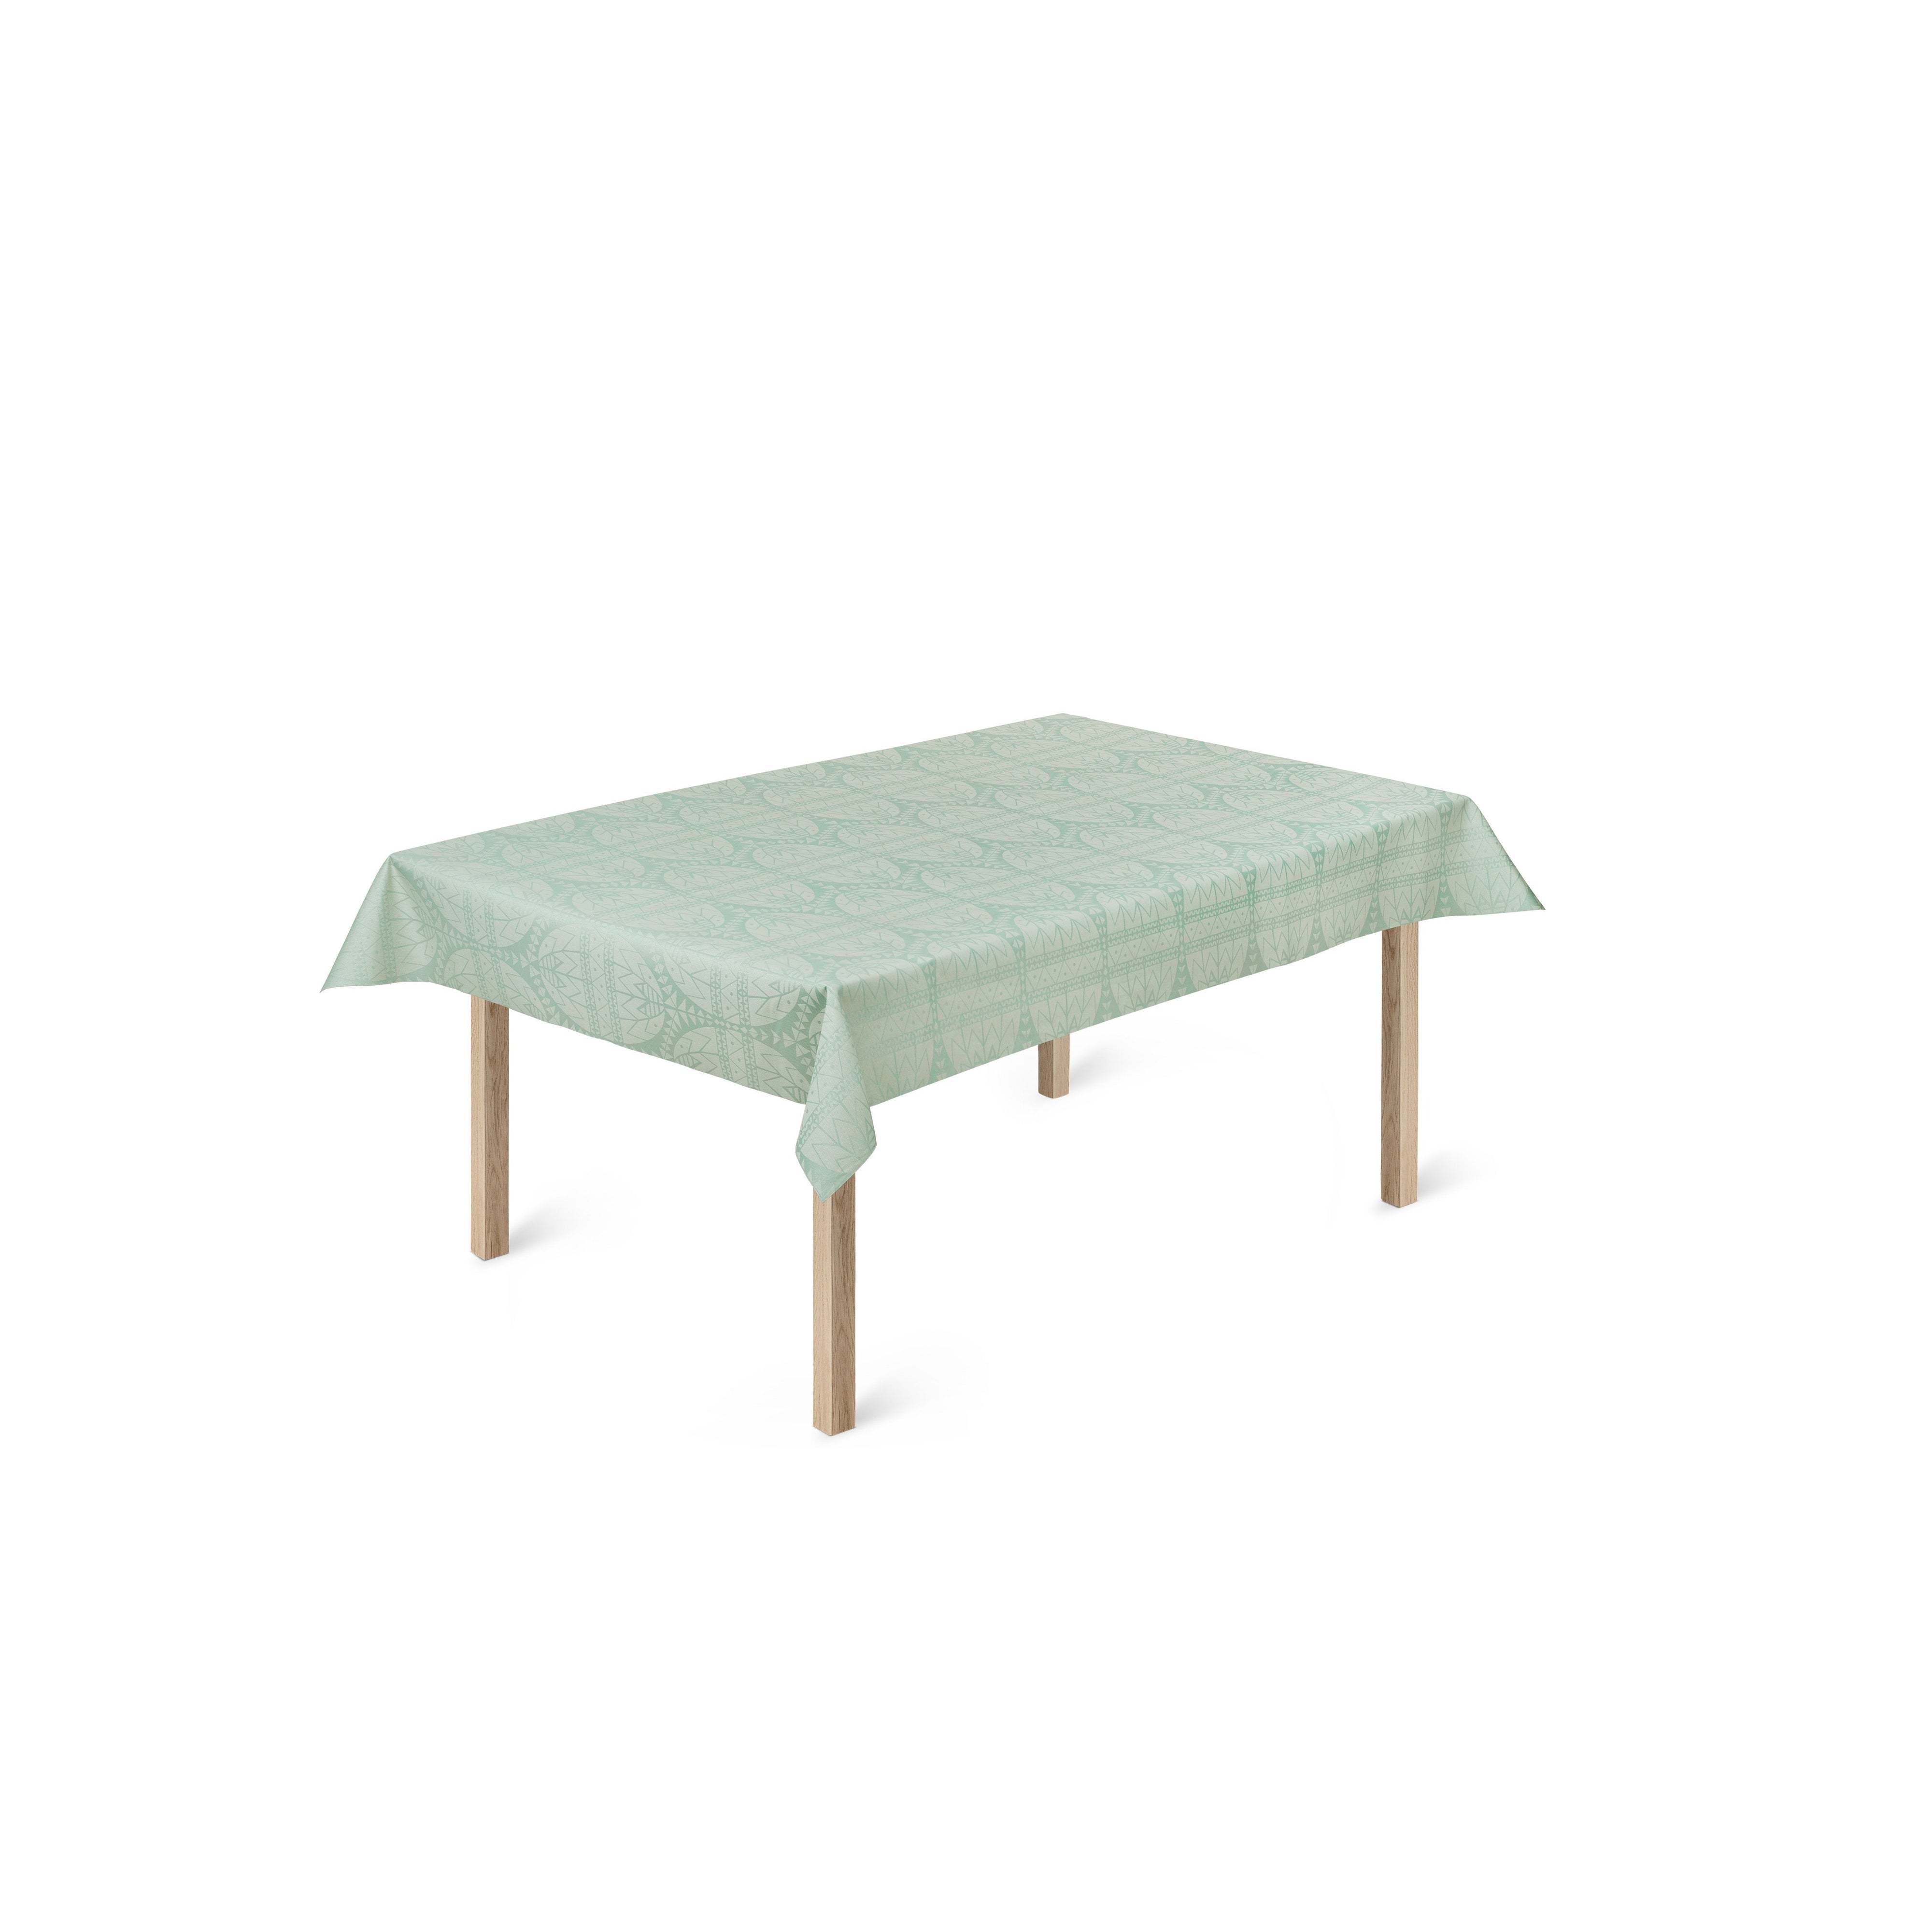 Toalha de mesa de acrílico da Páscoa de Rosendah, 140 cm, verde claro